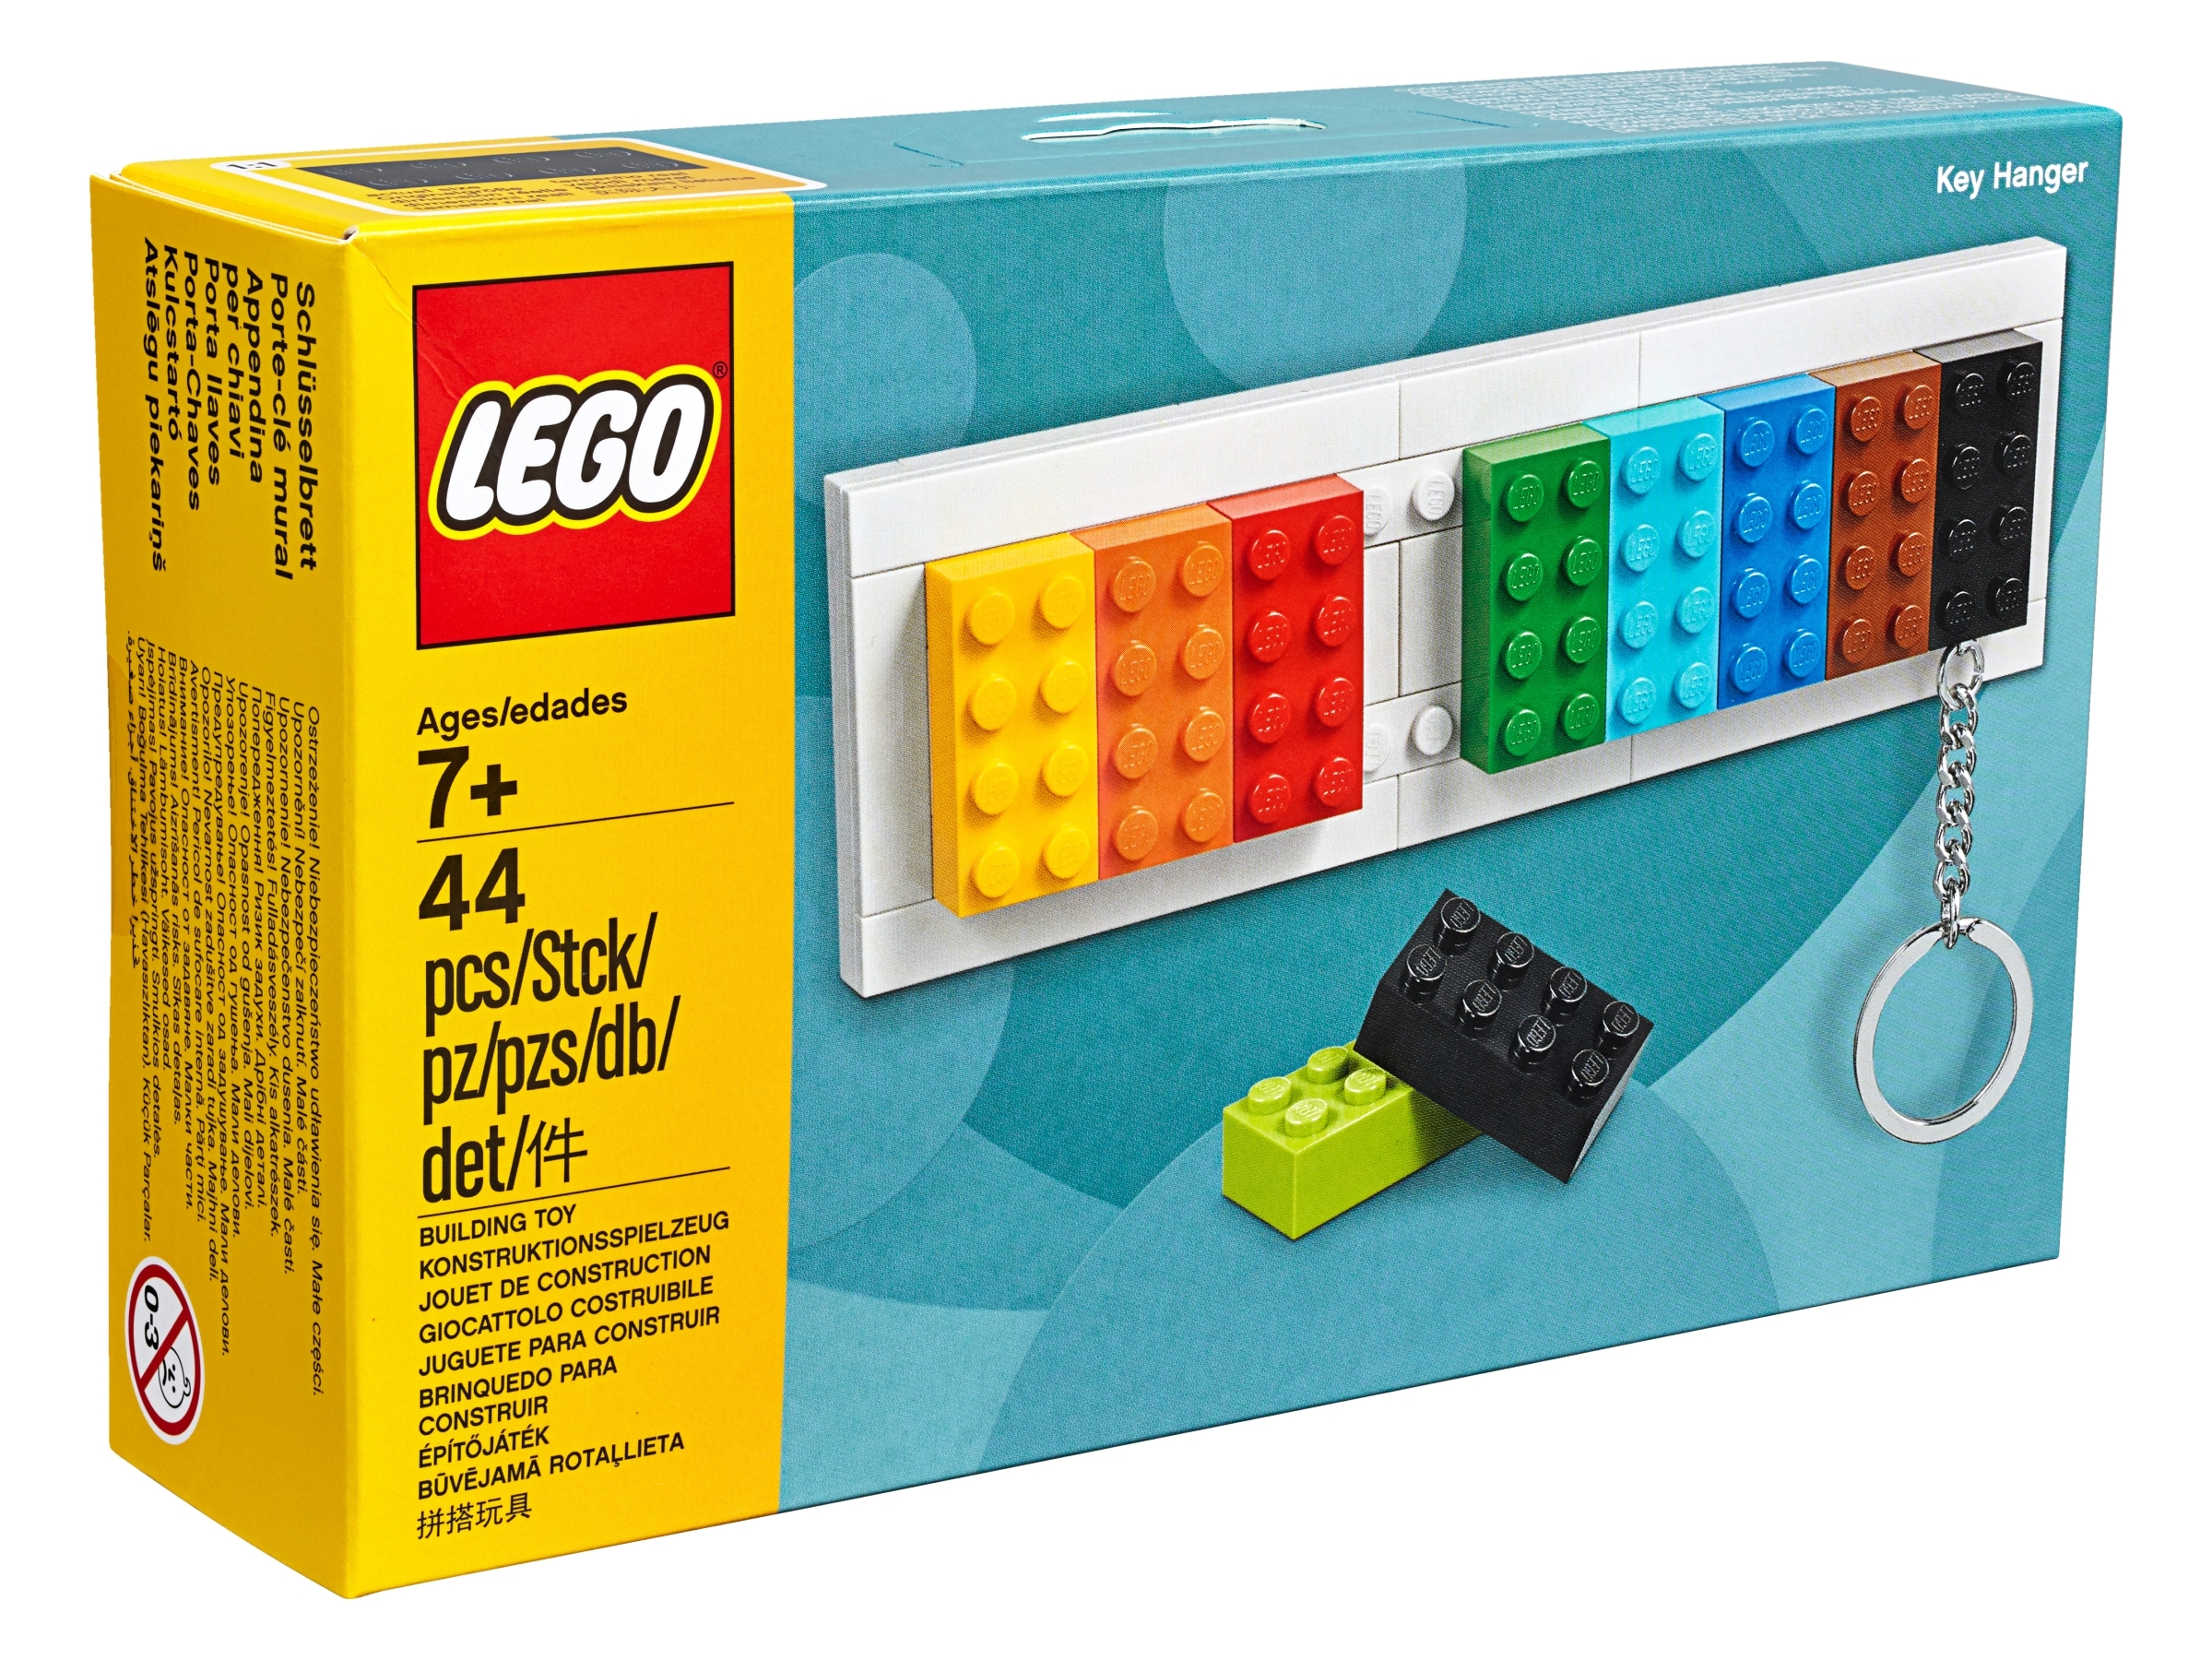 Lego key holder #lego #keyholder  Lego room decor, Lego diy crafts, Lego  diy projects